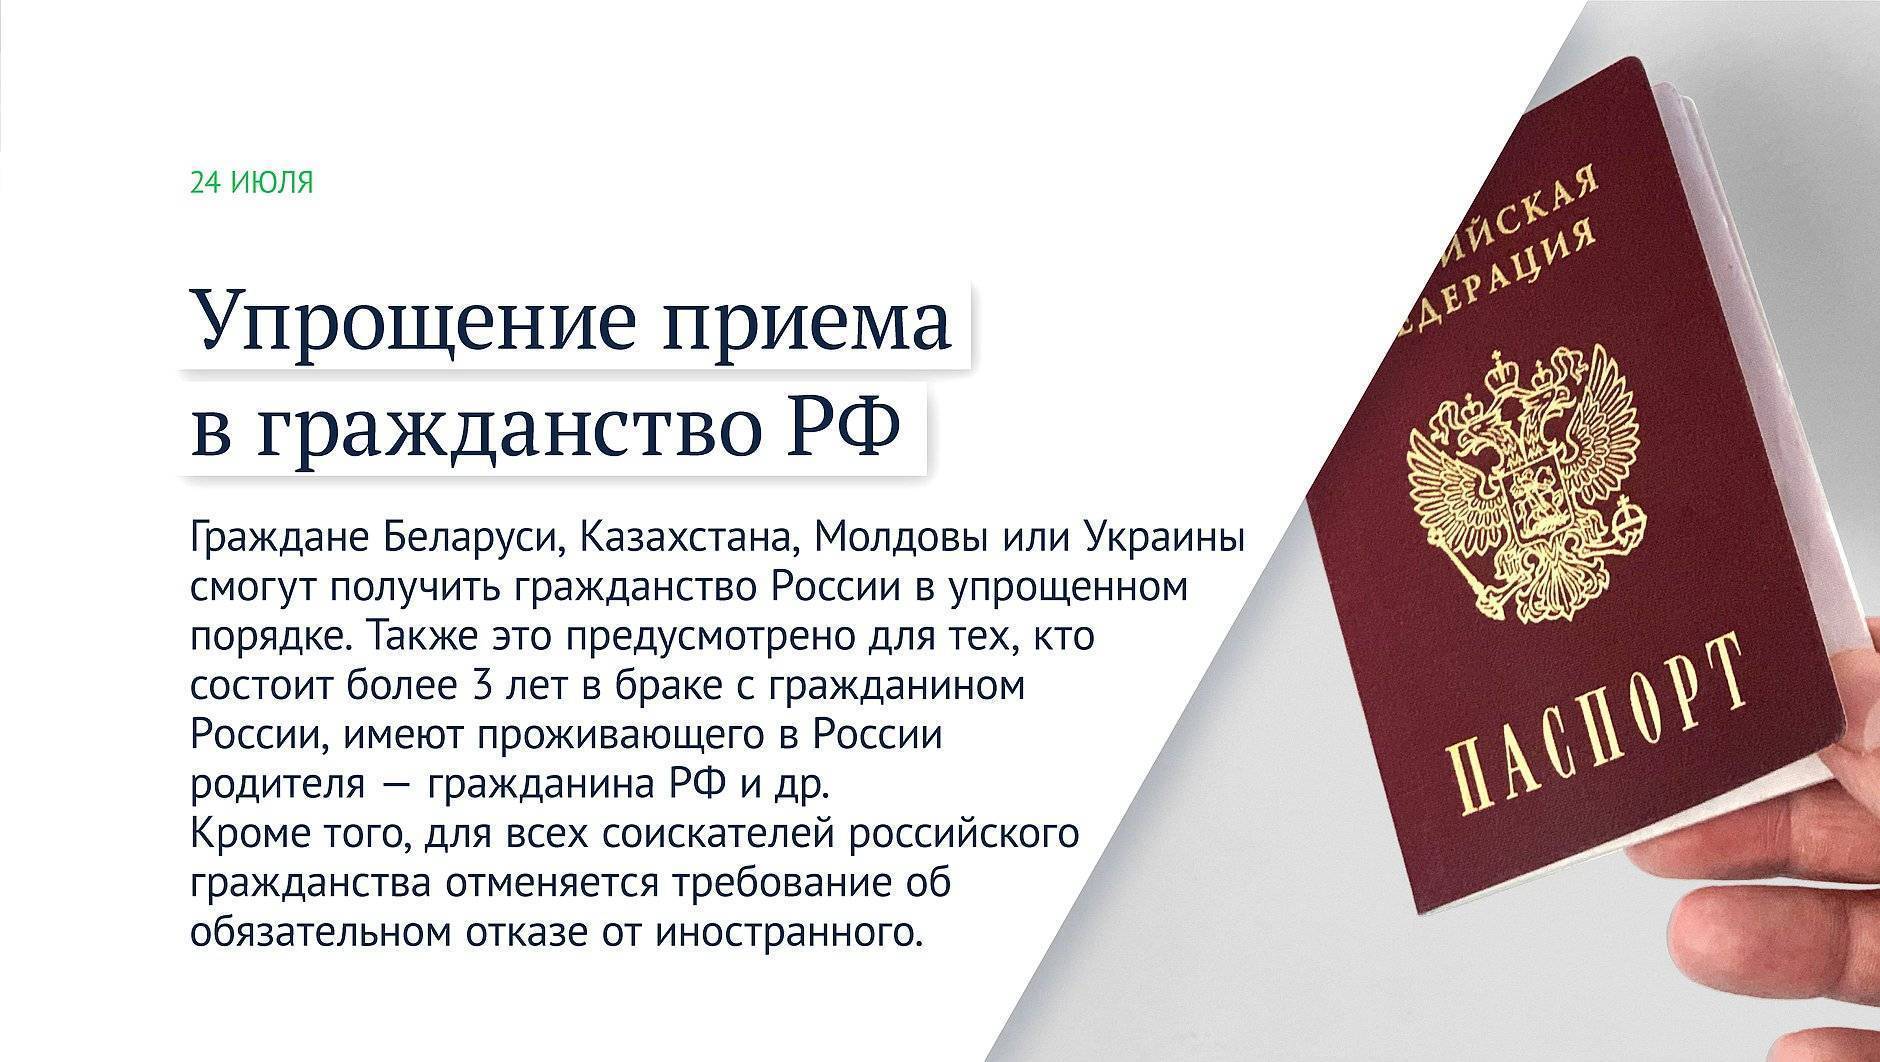 Гражданство и паспорт турции: как получить, куда обращаться